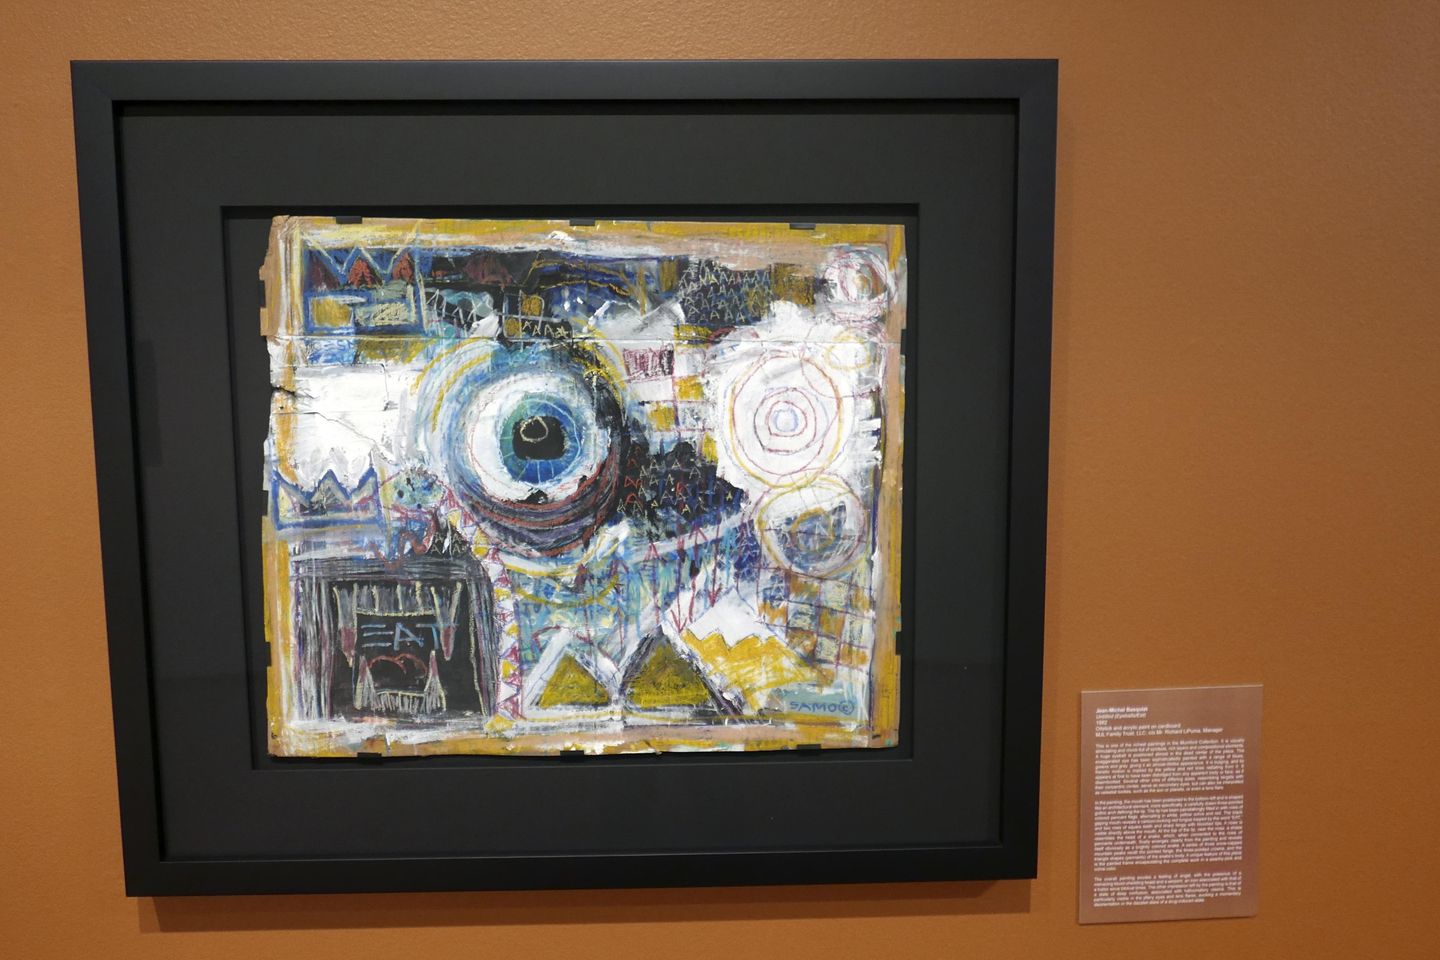 FBI incauta obra de arte de Basquiat en disputa en museo de Florida